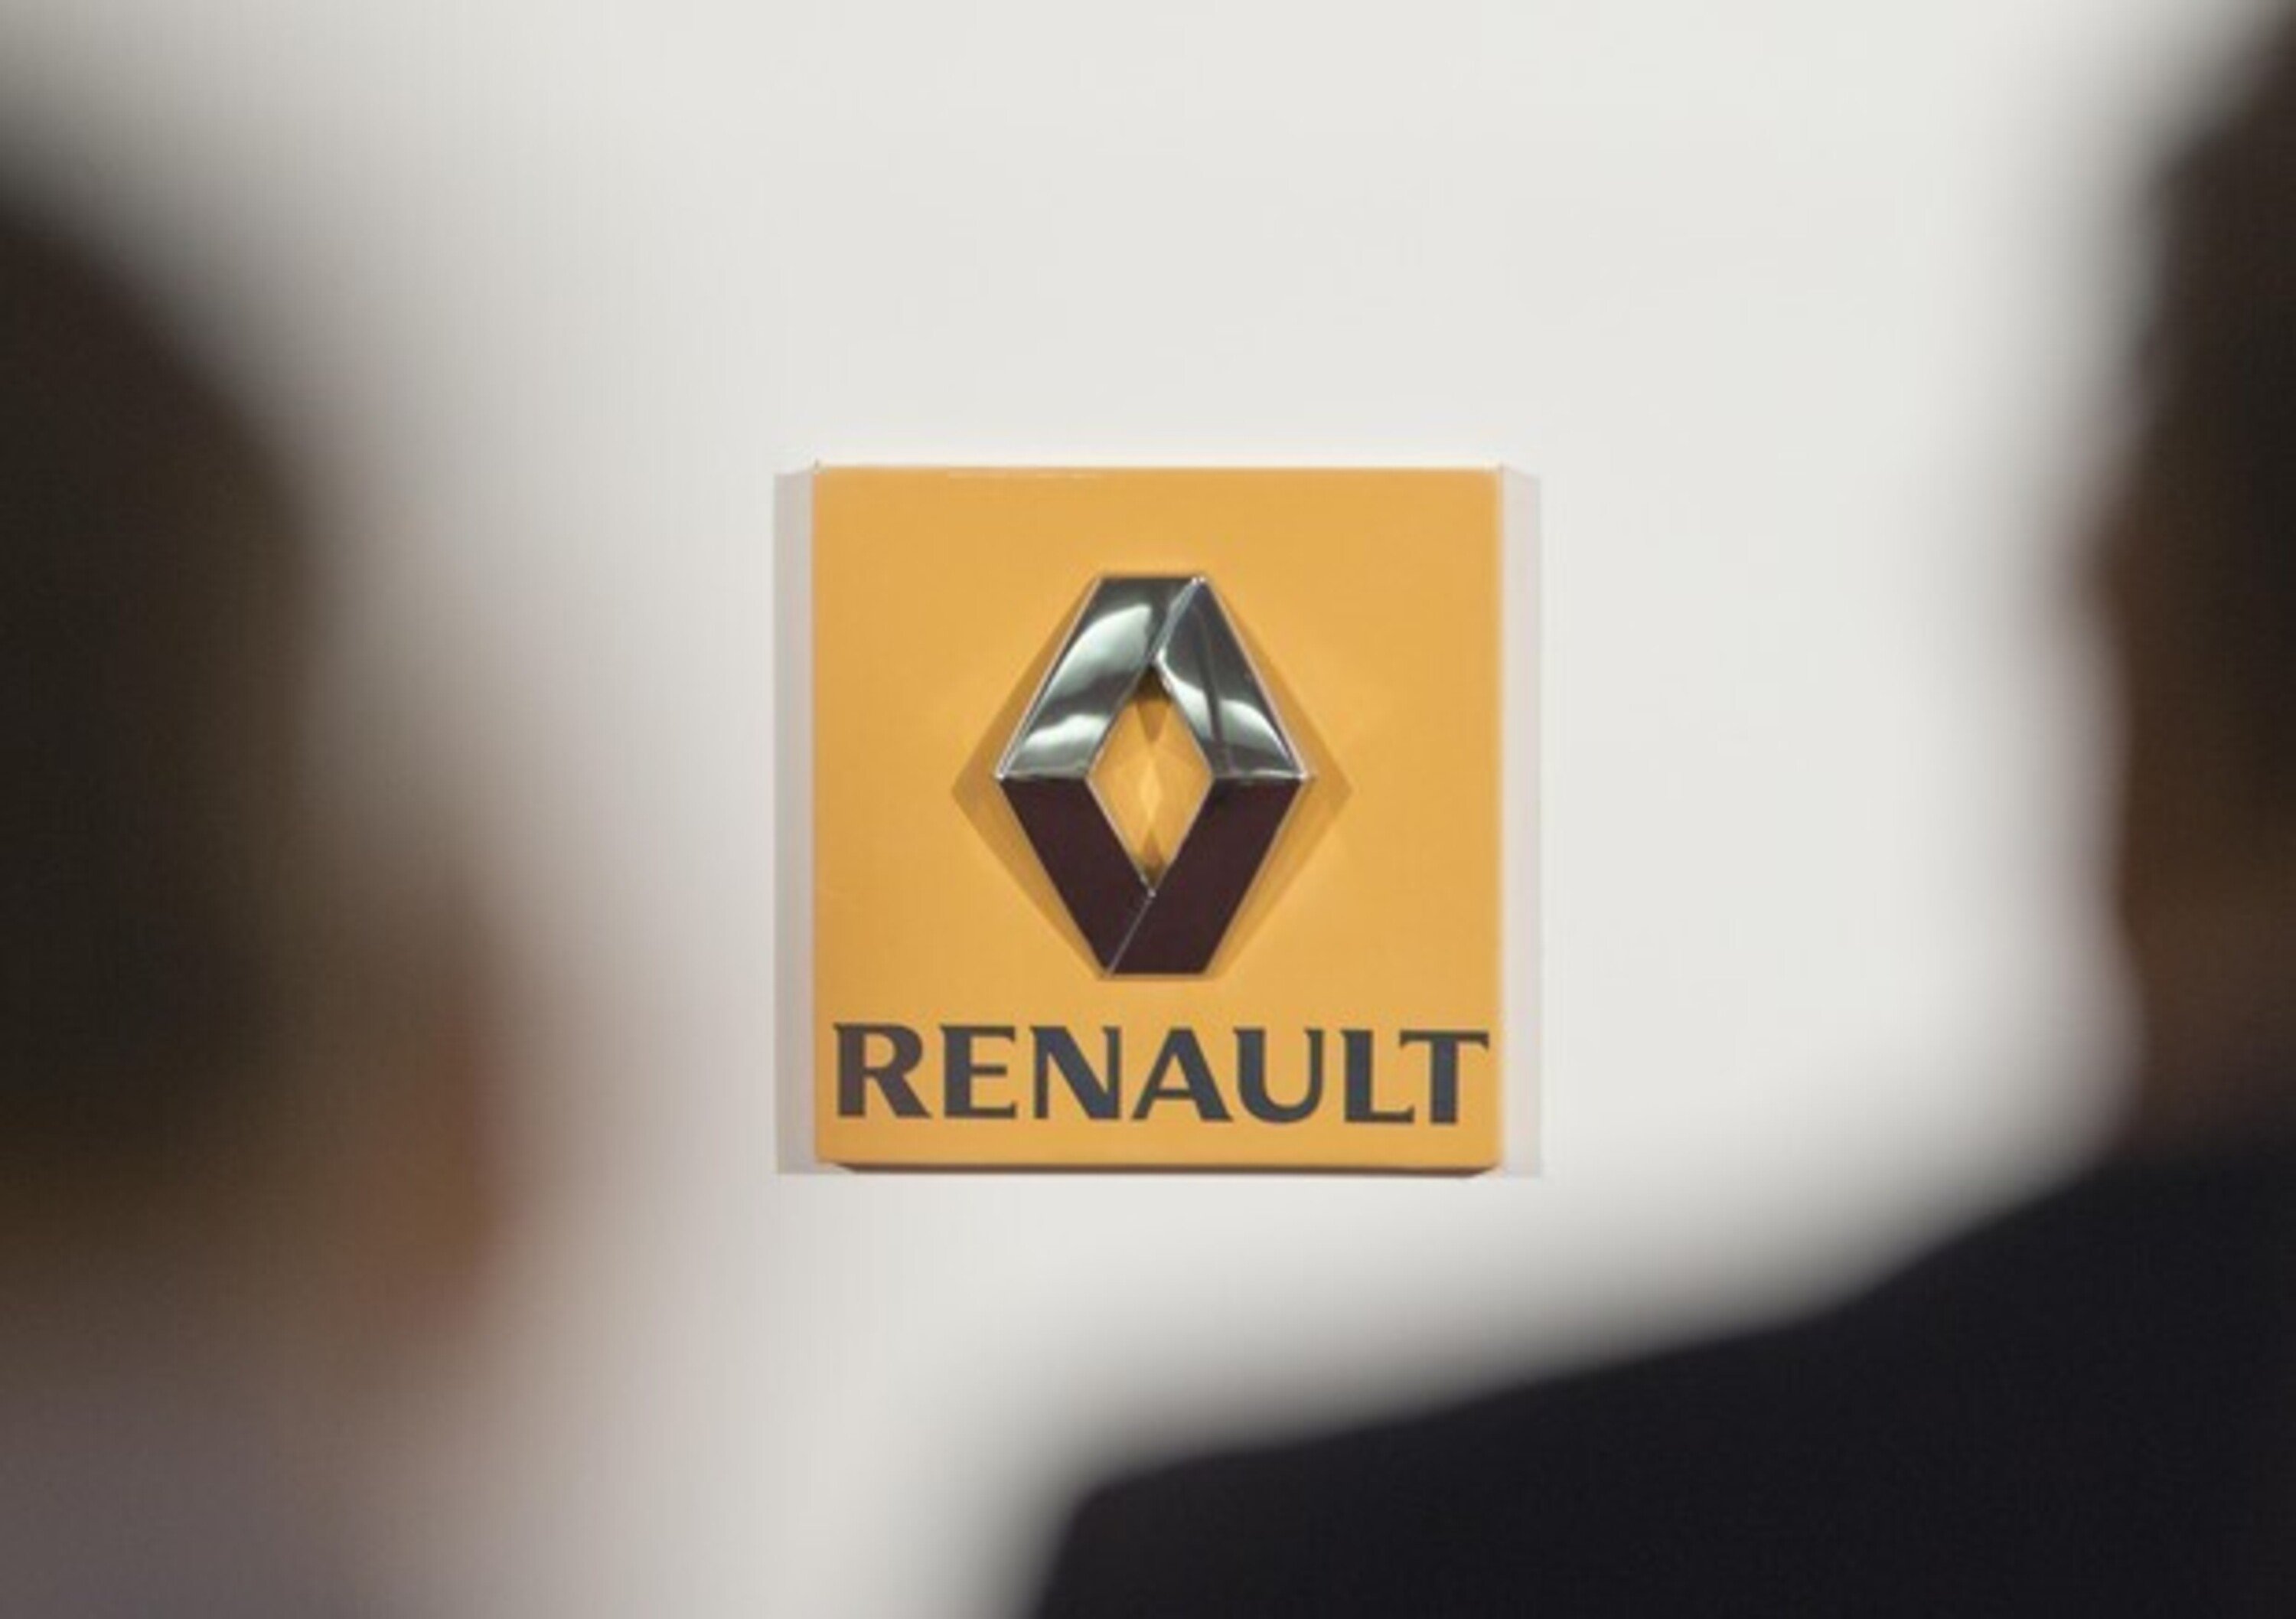 Coronavirus, Renault sospende la produzione in Corea del Sud. VW posticipa riapertura in Cina